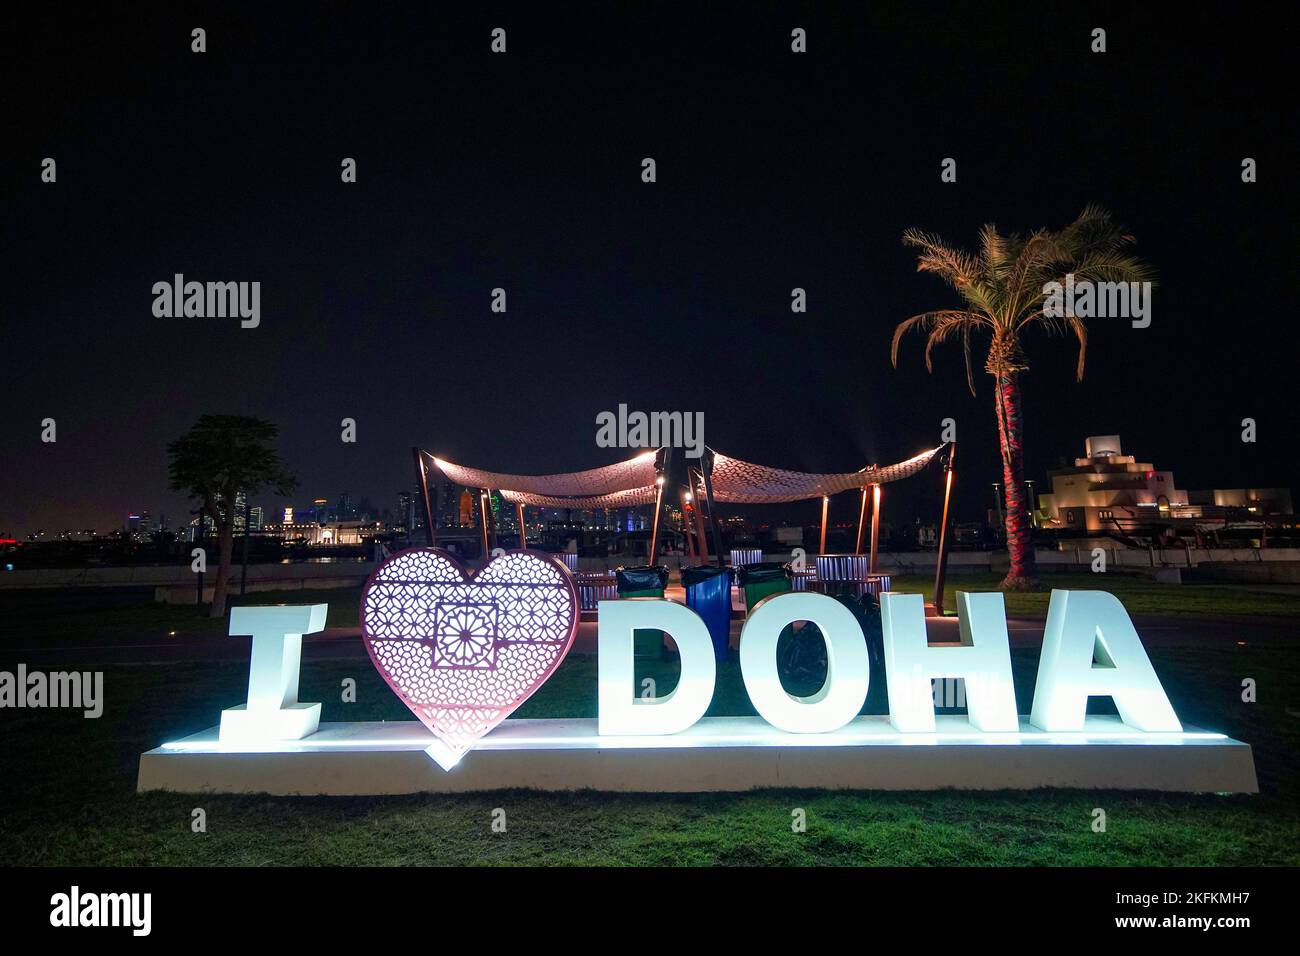 Un segno i Love Dohas in mostra, in vista della Coppa del mondo FIFA. Data immagine: Sabato 19 novembre 2022. Foto Stock